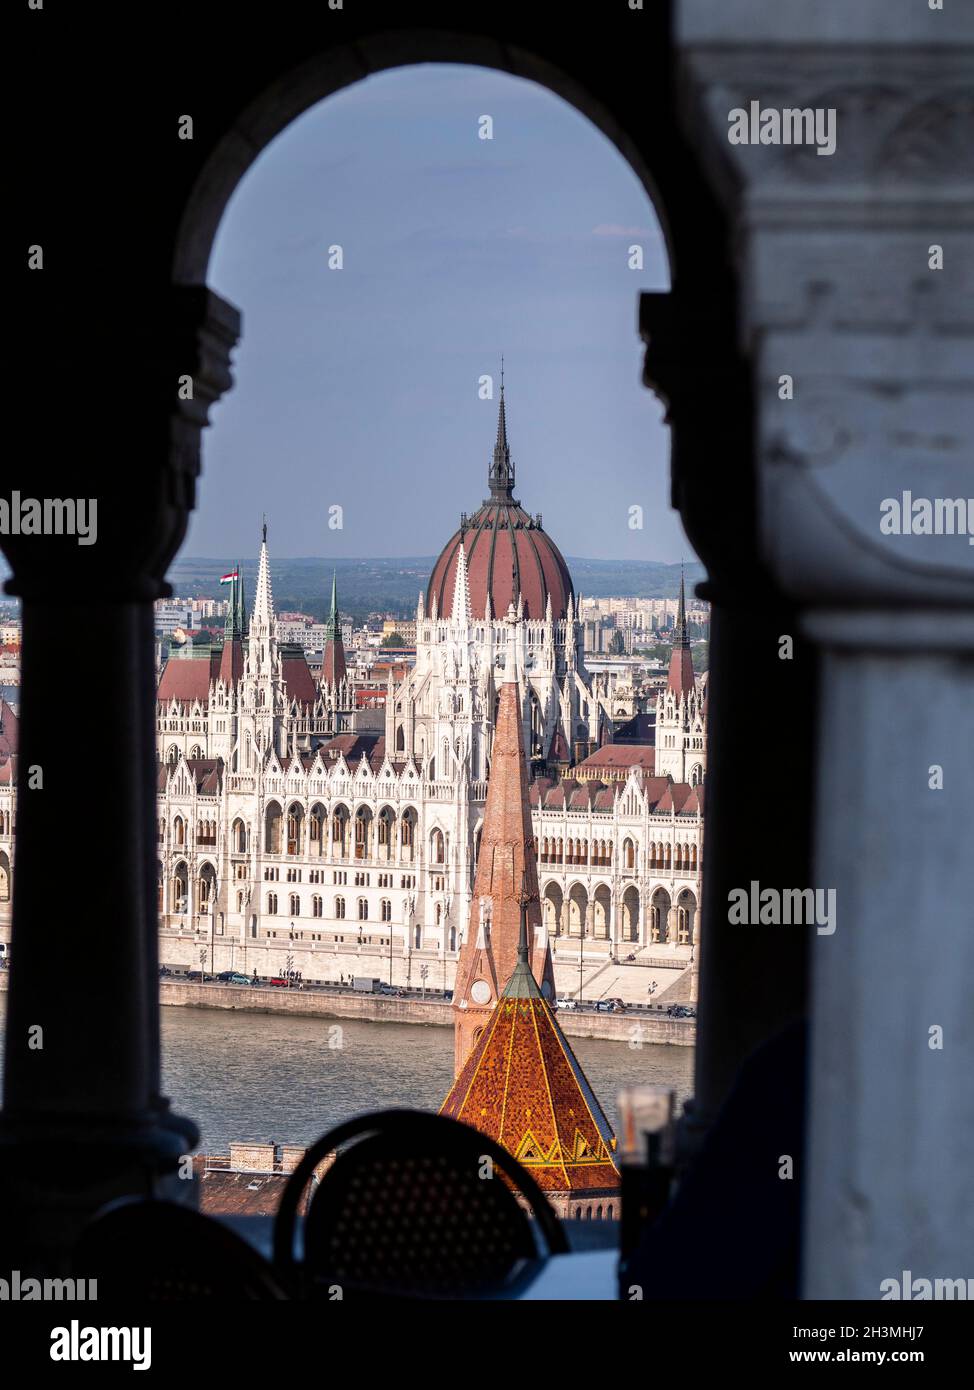 Parlamento de Budapest en el sol de la tarde: El Danubio y el Parlamento húngaro en Pest de la colina del castillo en Buda, enmarcado por los arcos de la Warf Fishermans. Foto de stock